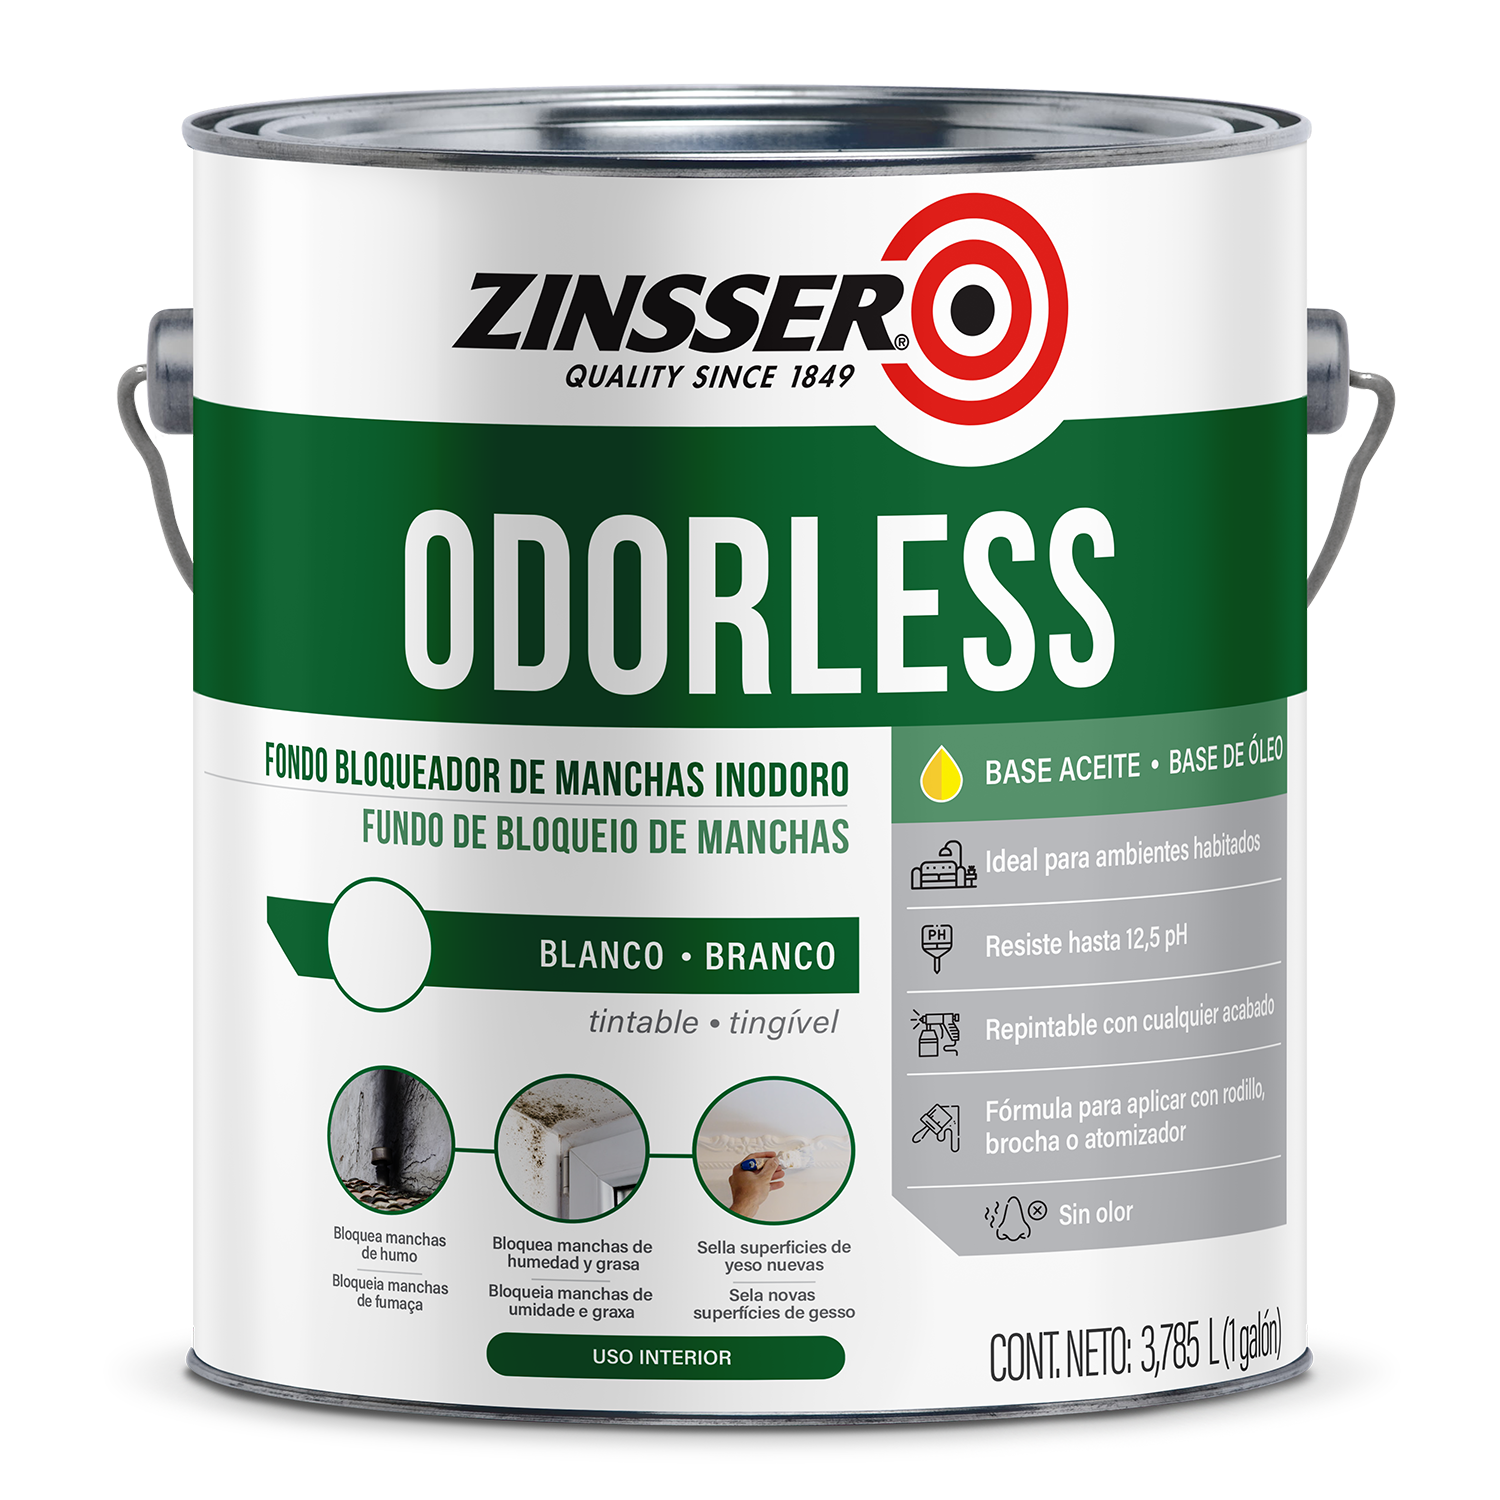 Zinsser Odorless - Fondo Bloqueador de Manchas Inodoro